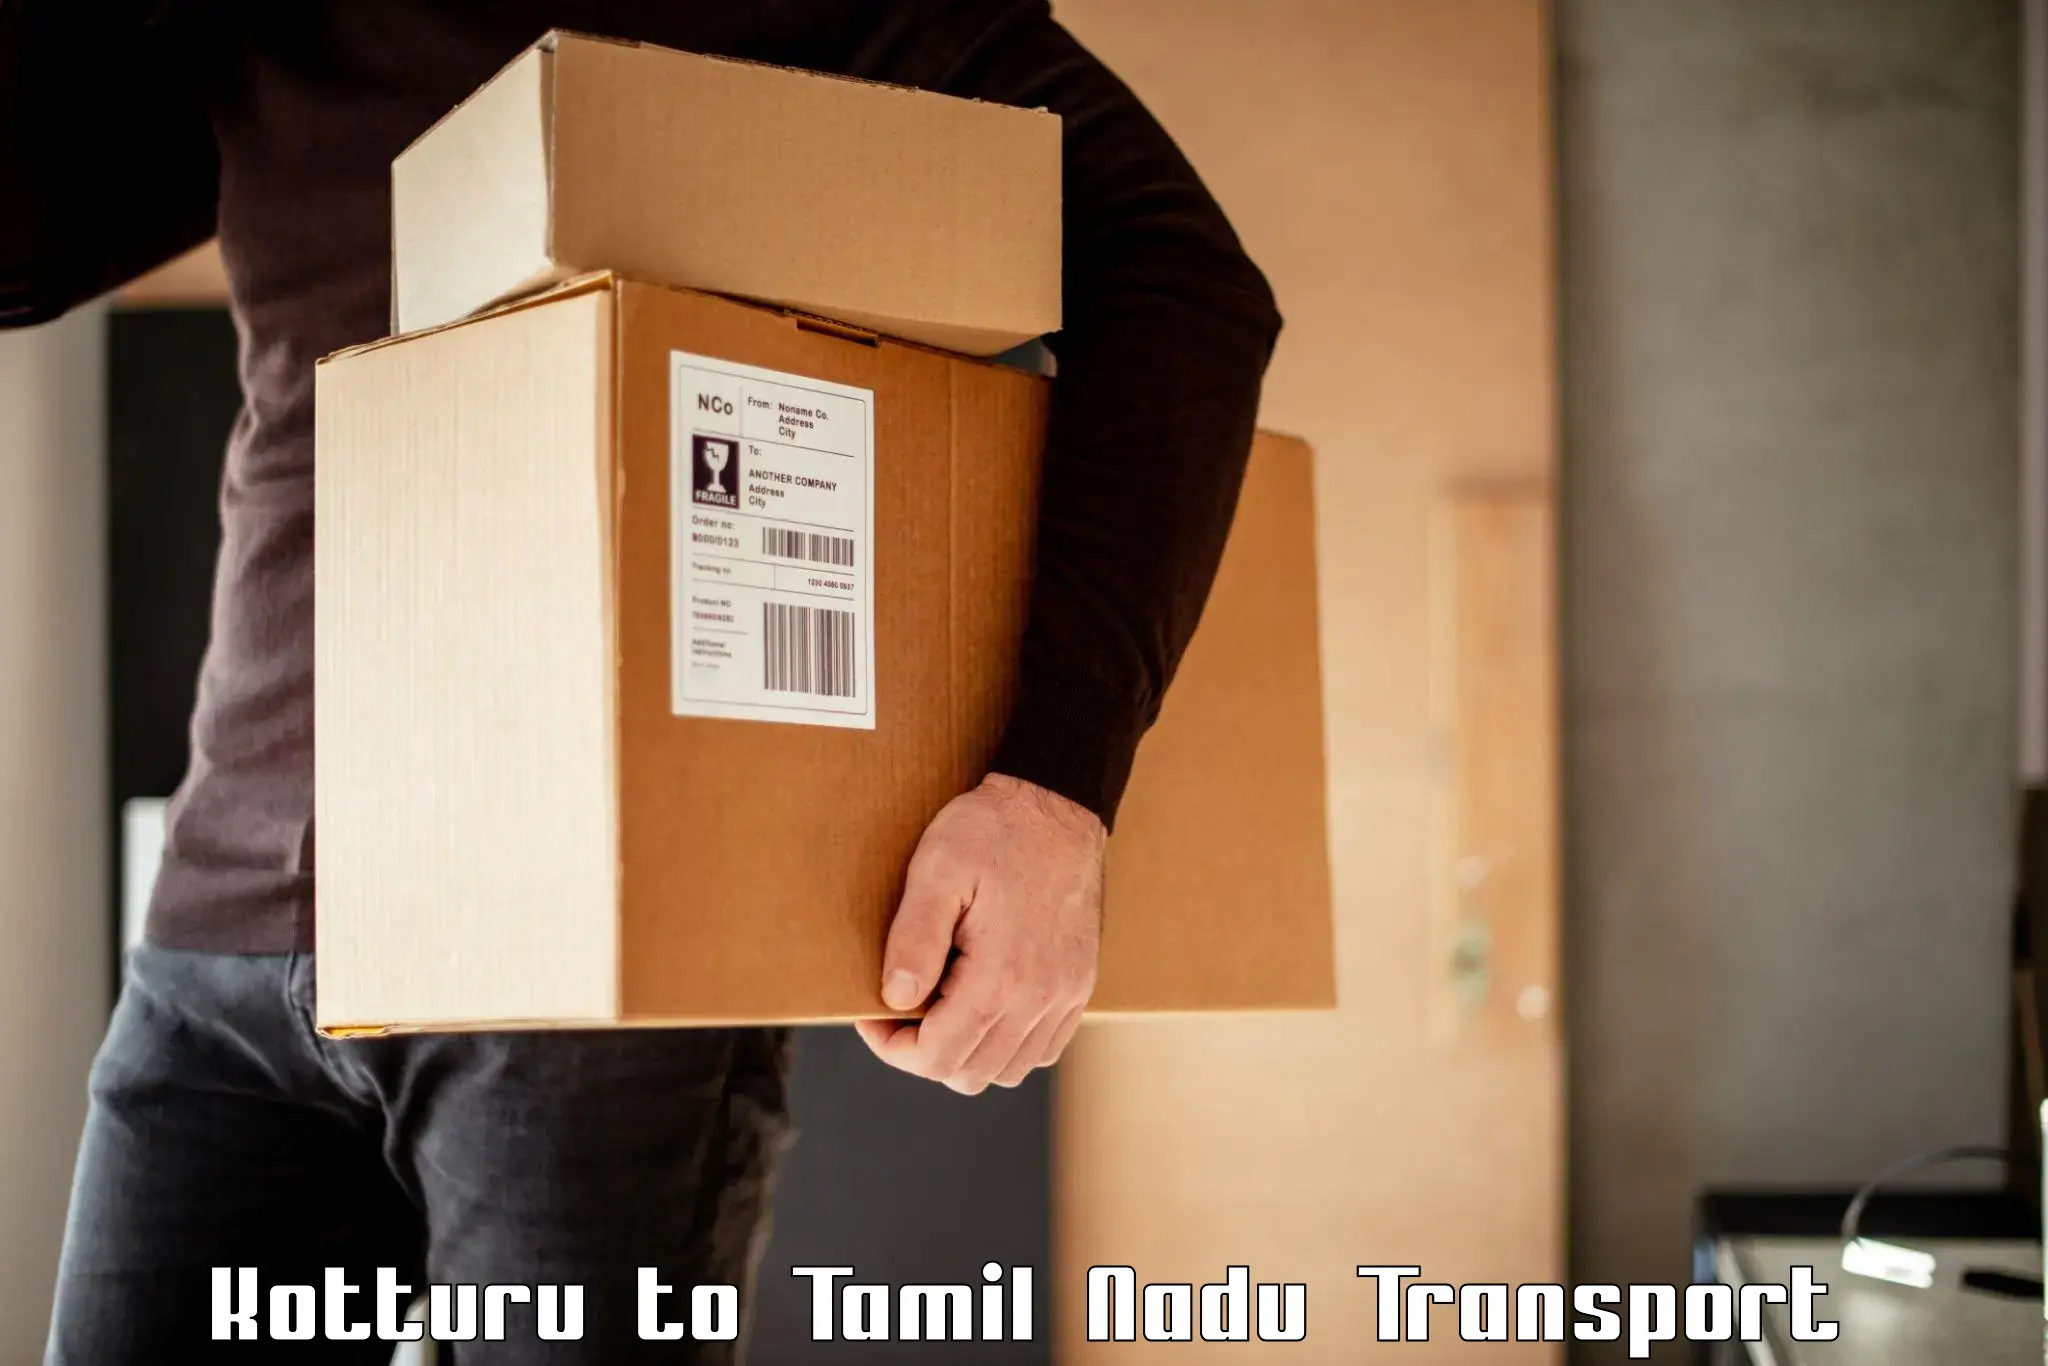 Vehicle parcel service in Kotturu to Tamil Nadu